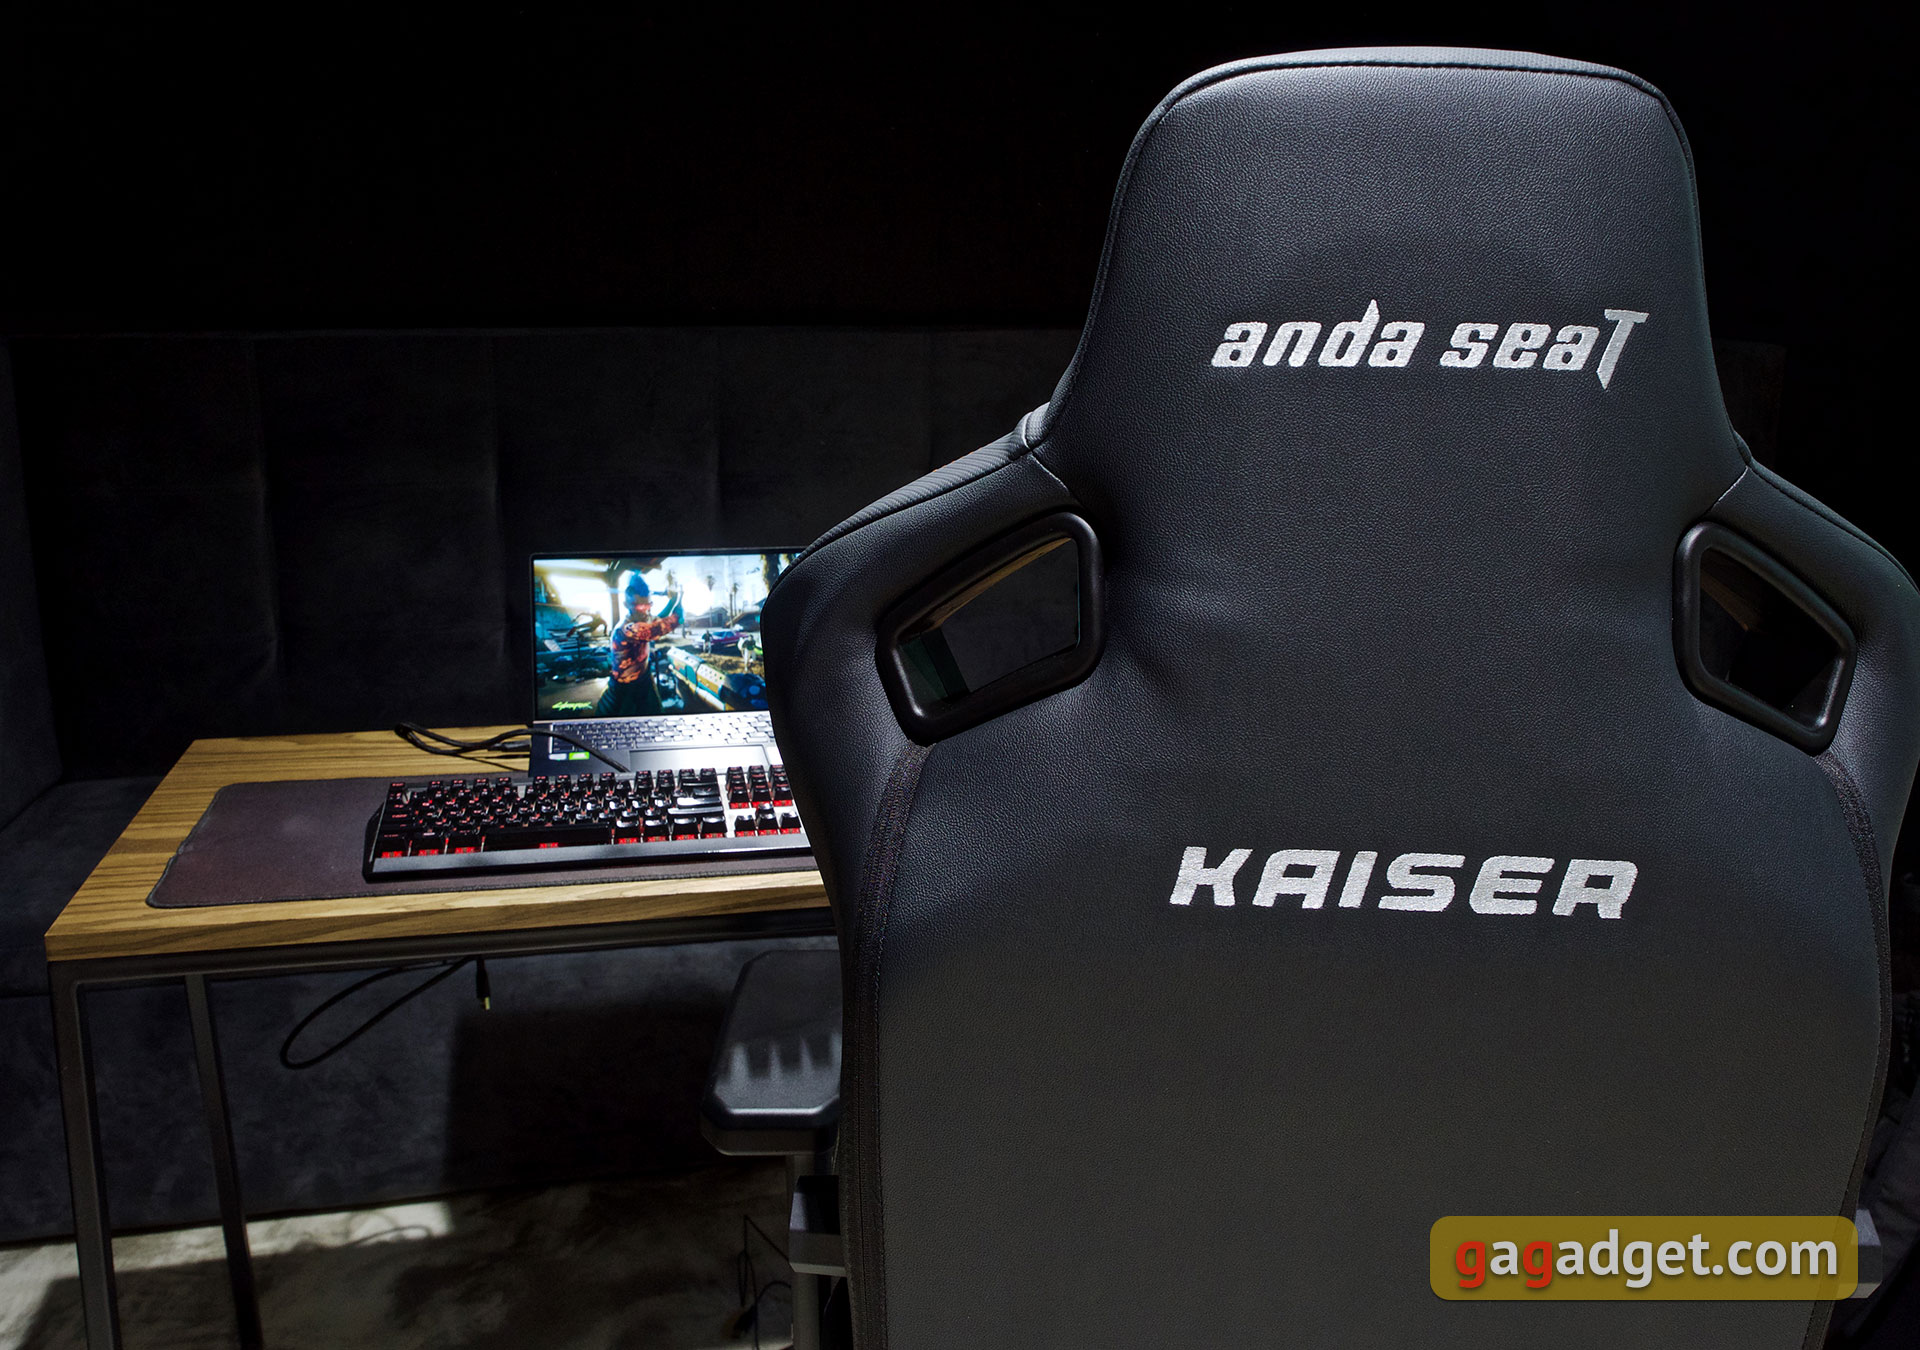 Trono per il gioco: una recensione dell'Anda Seat Kaiser 3 XL-19